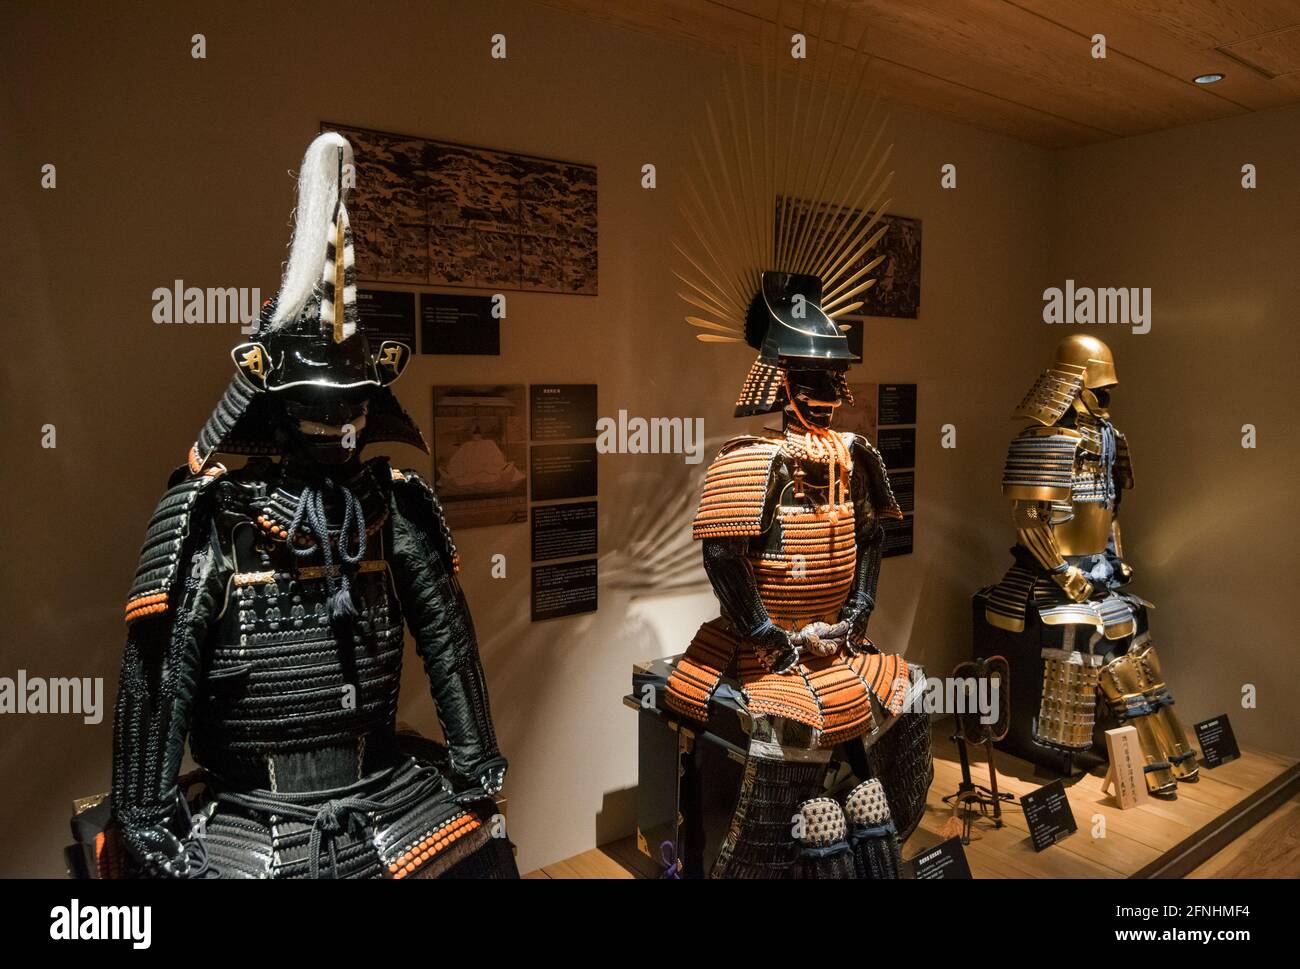 Tokyo, Japon - 12 janvier 2016 : des armures de samouraï et des épées de samouraï sont exposées dans le musée de Samurai à Kabukicho Shinjuku, Tokyo - Japon Banque D'Images